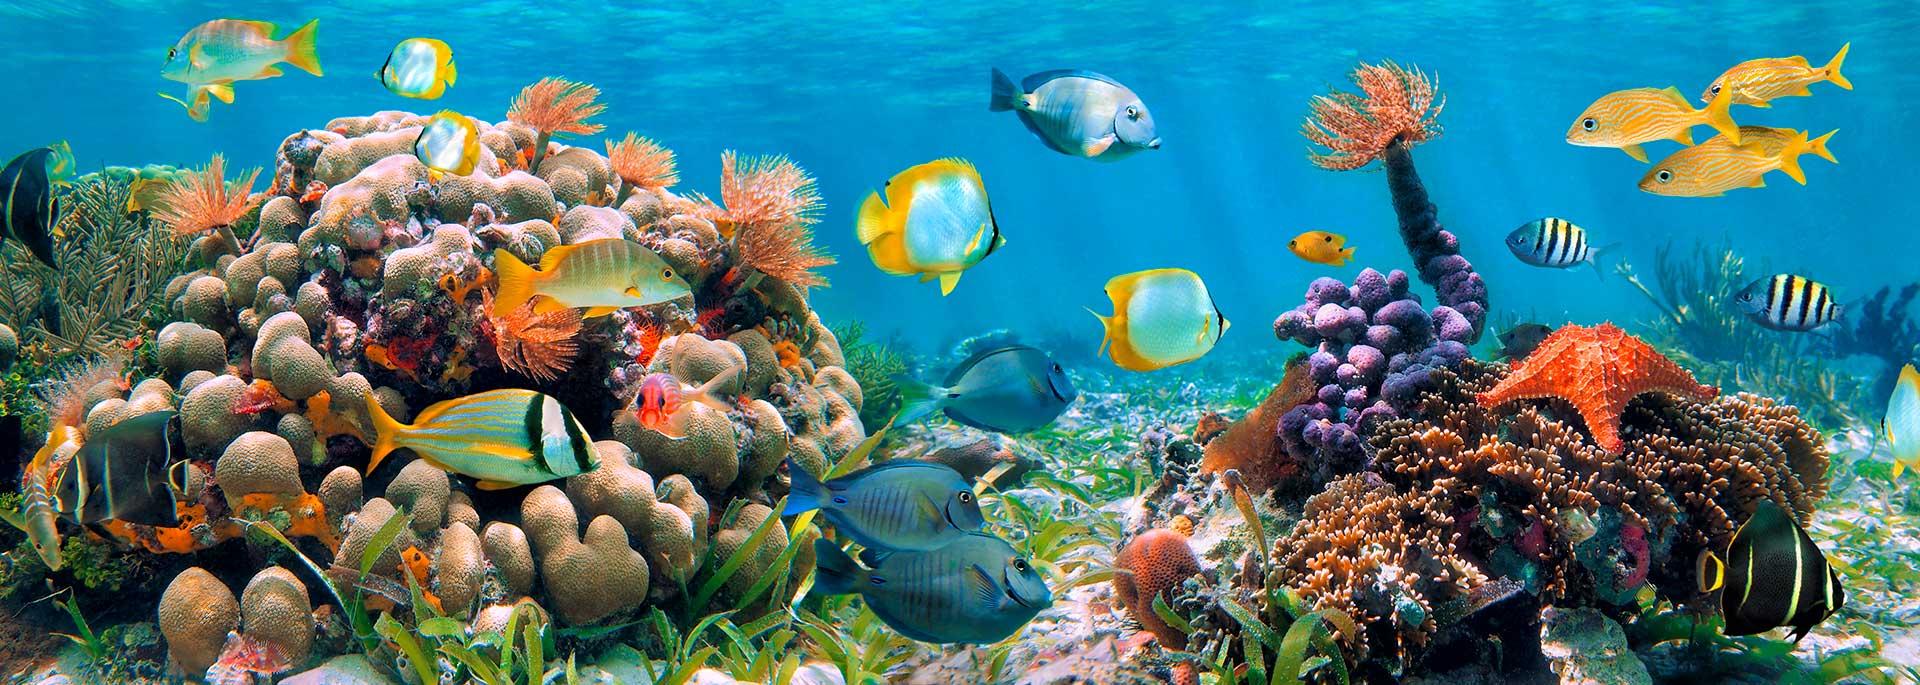 Snorkeling in Mar Rosso: i punti migliori per ammirare la barriera corallina